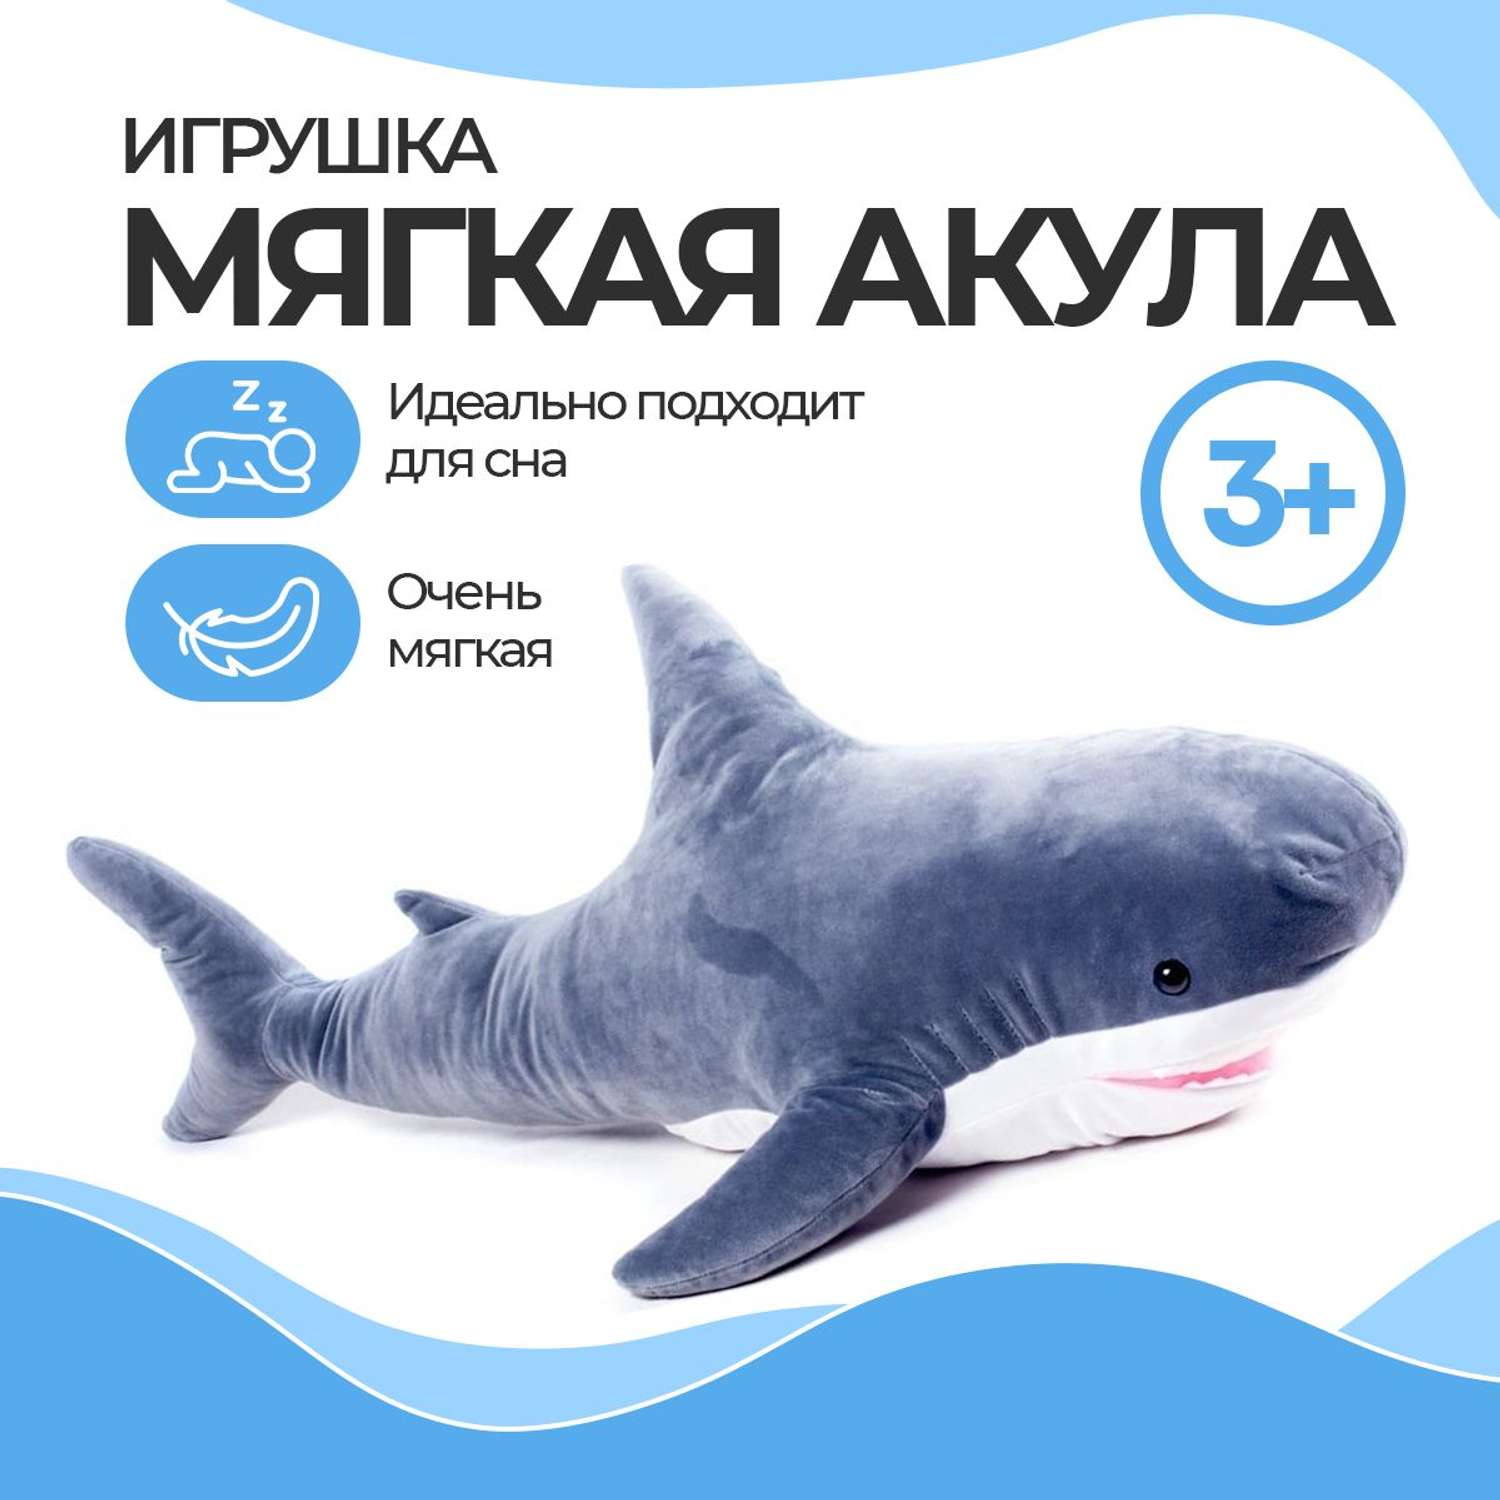 Мягкая игрушка Нижегородская игрушка акула - фото 2